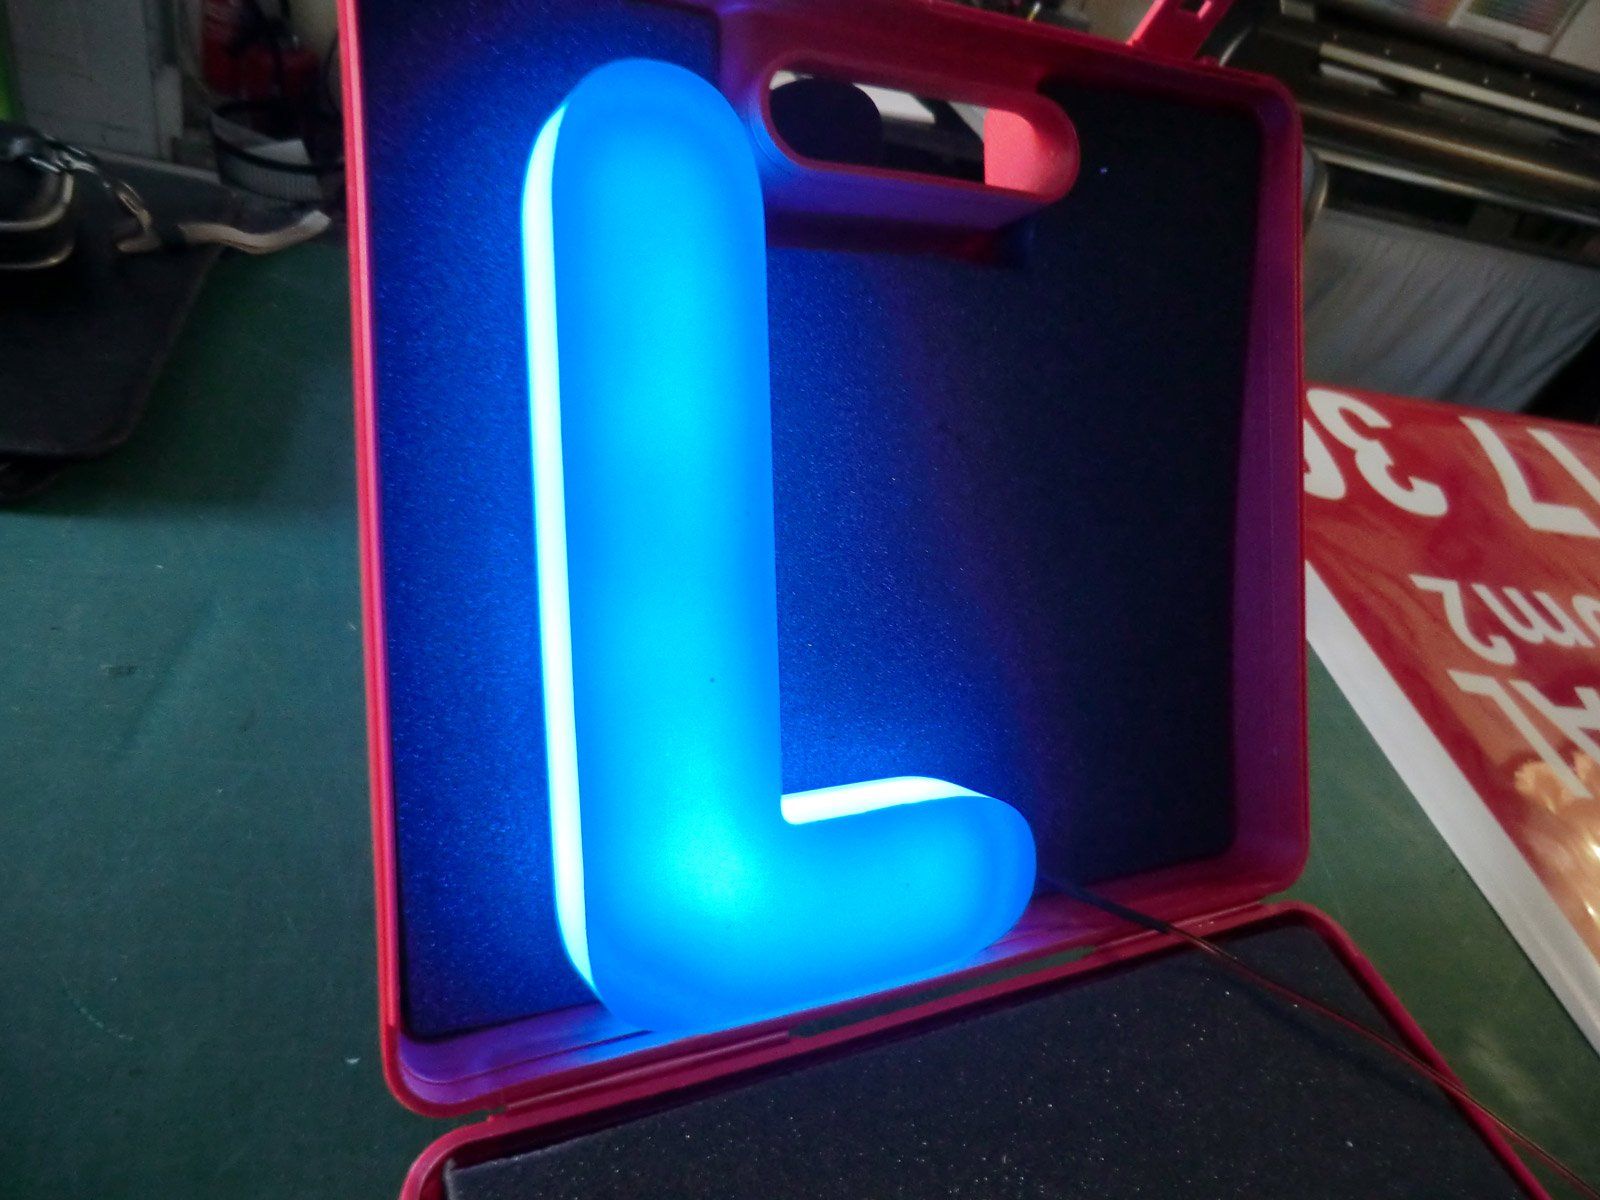 Enseigne lumineuse avec la lettre L bleue dans une boîte rouge et noire à l'interieur